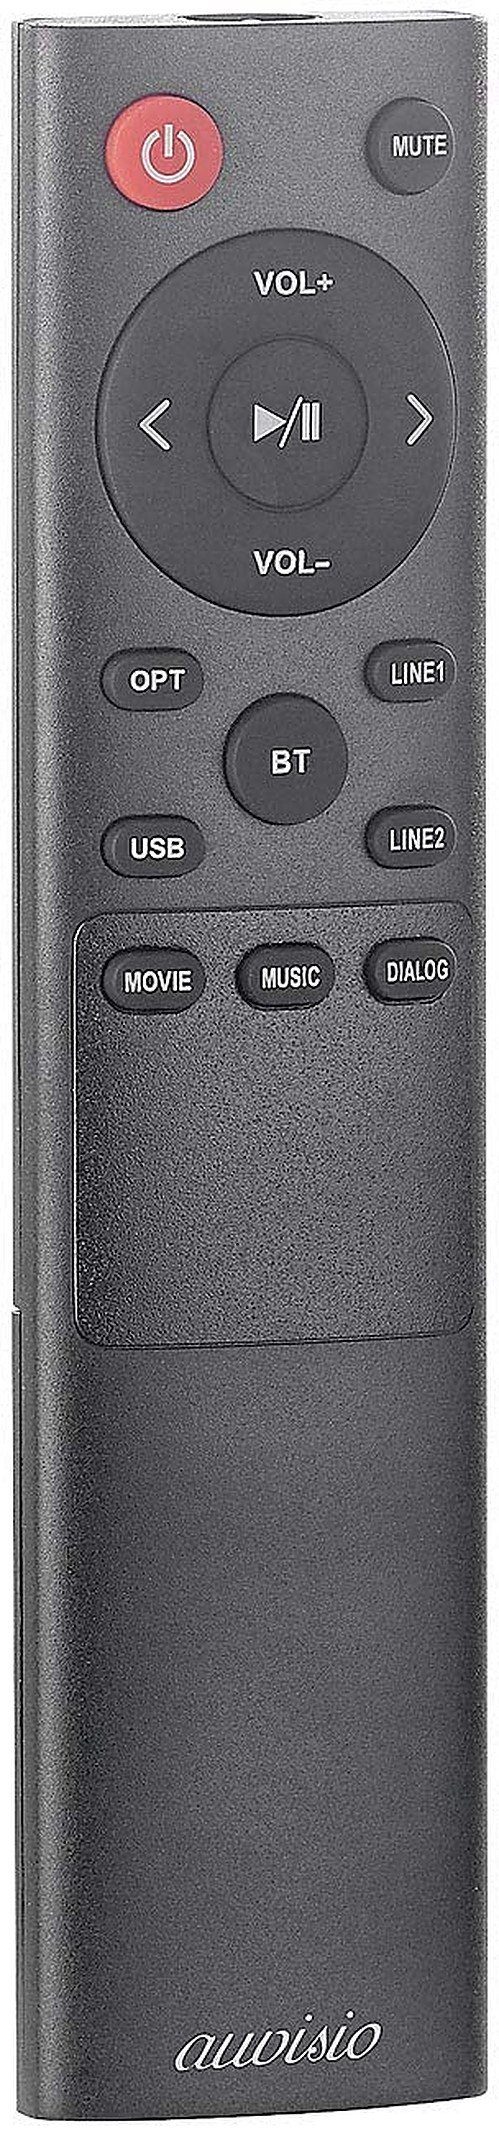 Holz-Gehäuse Aktiv-Stereo-Regallautsprecher-Set W) MSS-95.usb auvisio Bluetooth Regal-Lautsprecher (50